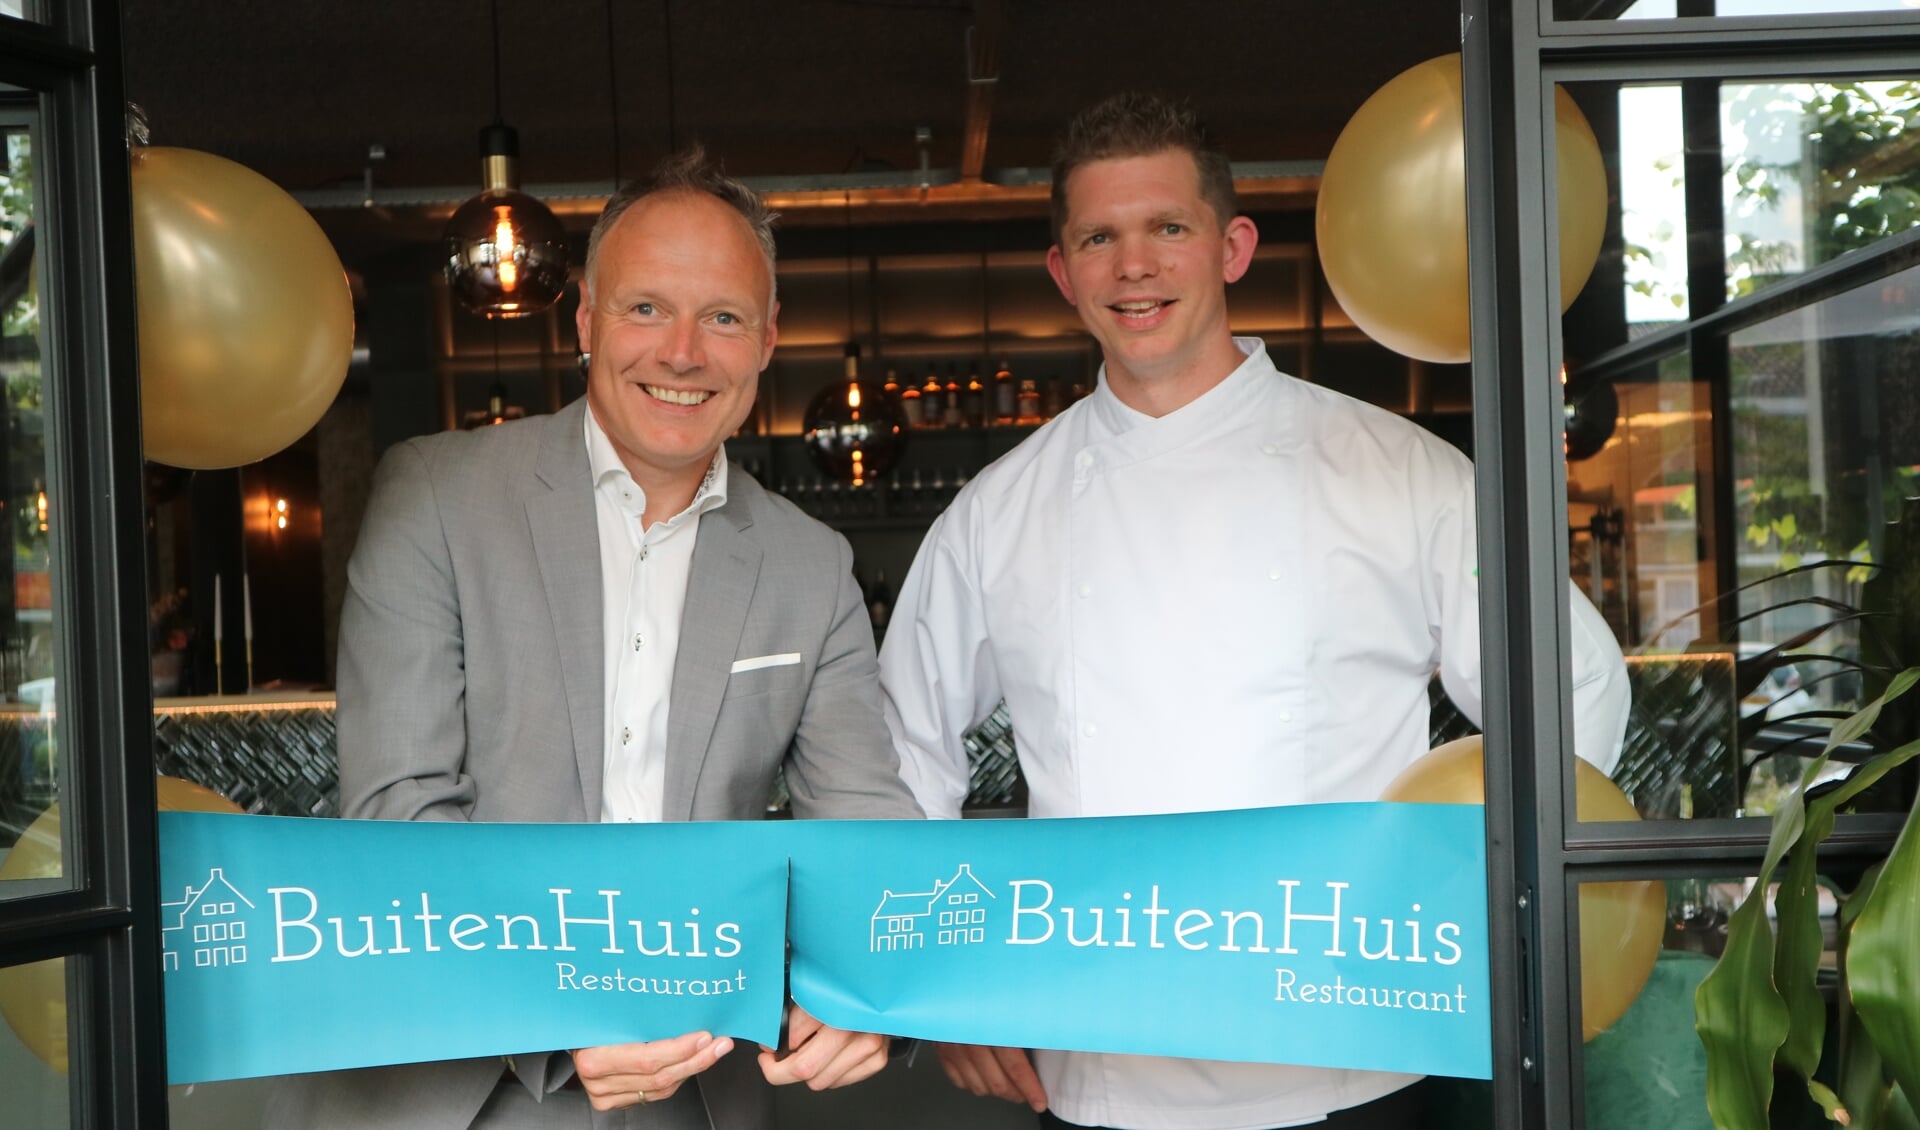 Wethouder Patrick Kiel opende restaurant BuitenHuis van Bart Buitenhuis.